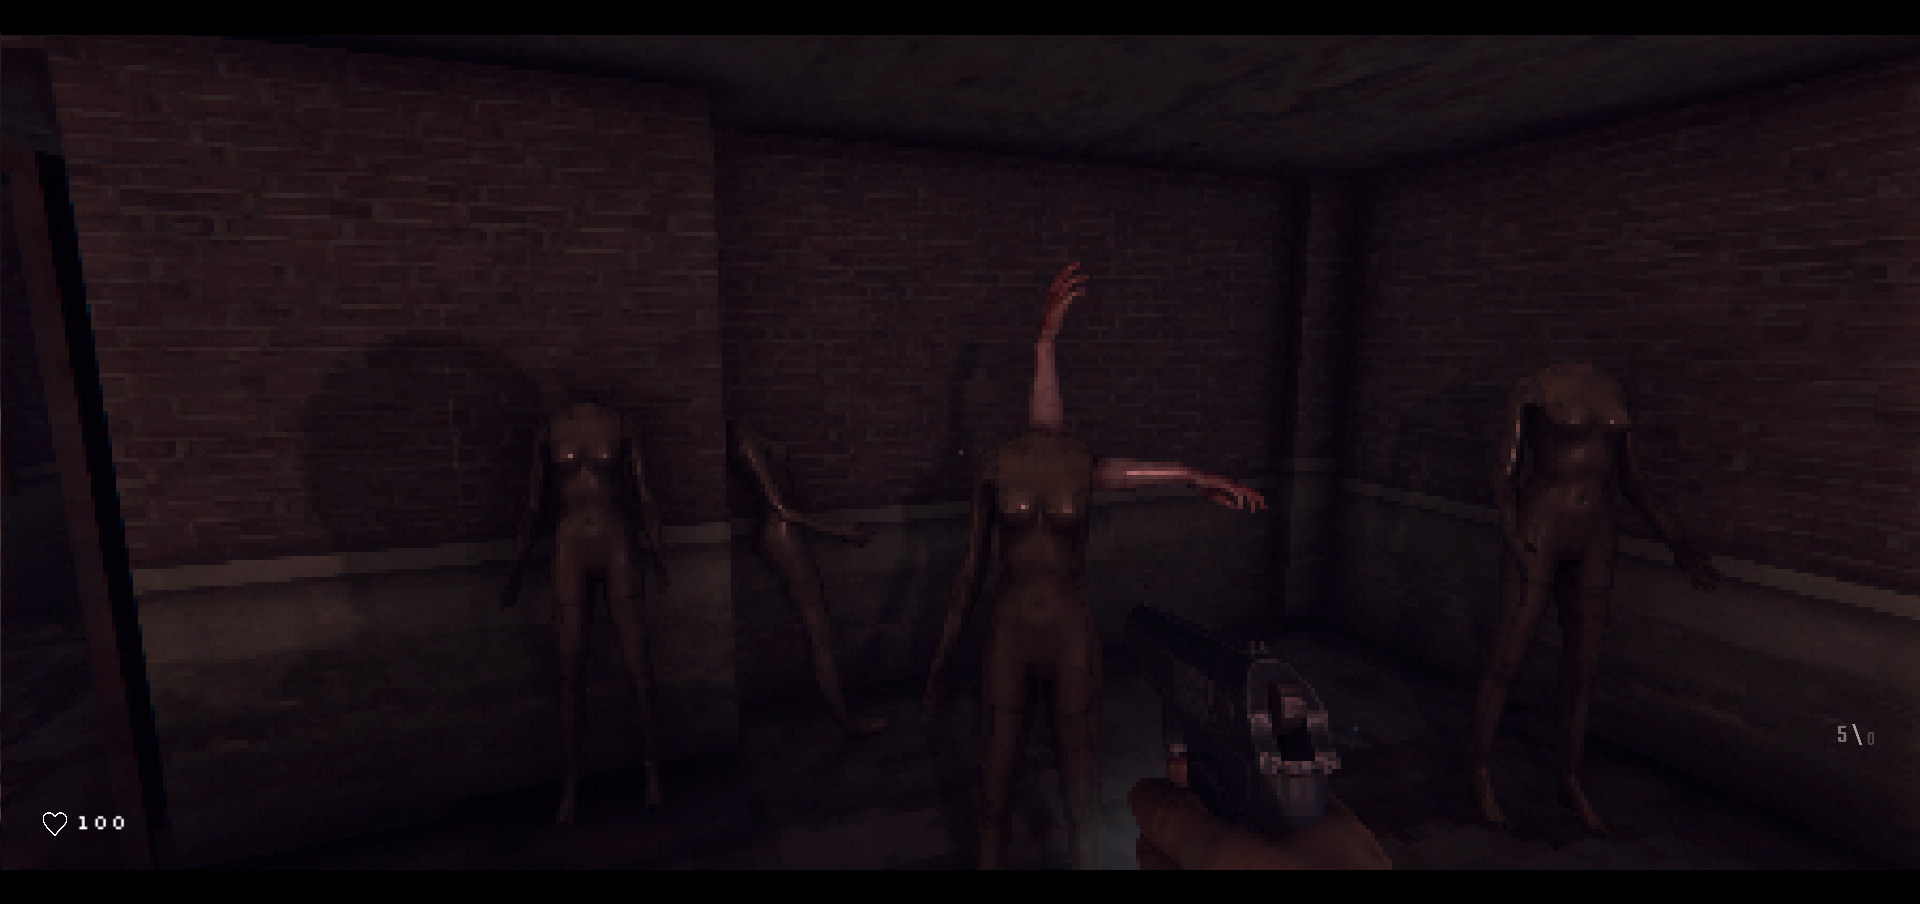 Rotten Flesh - Cosmic Horror Survival Game on Steam